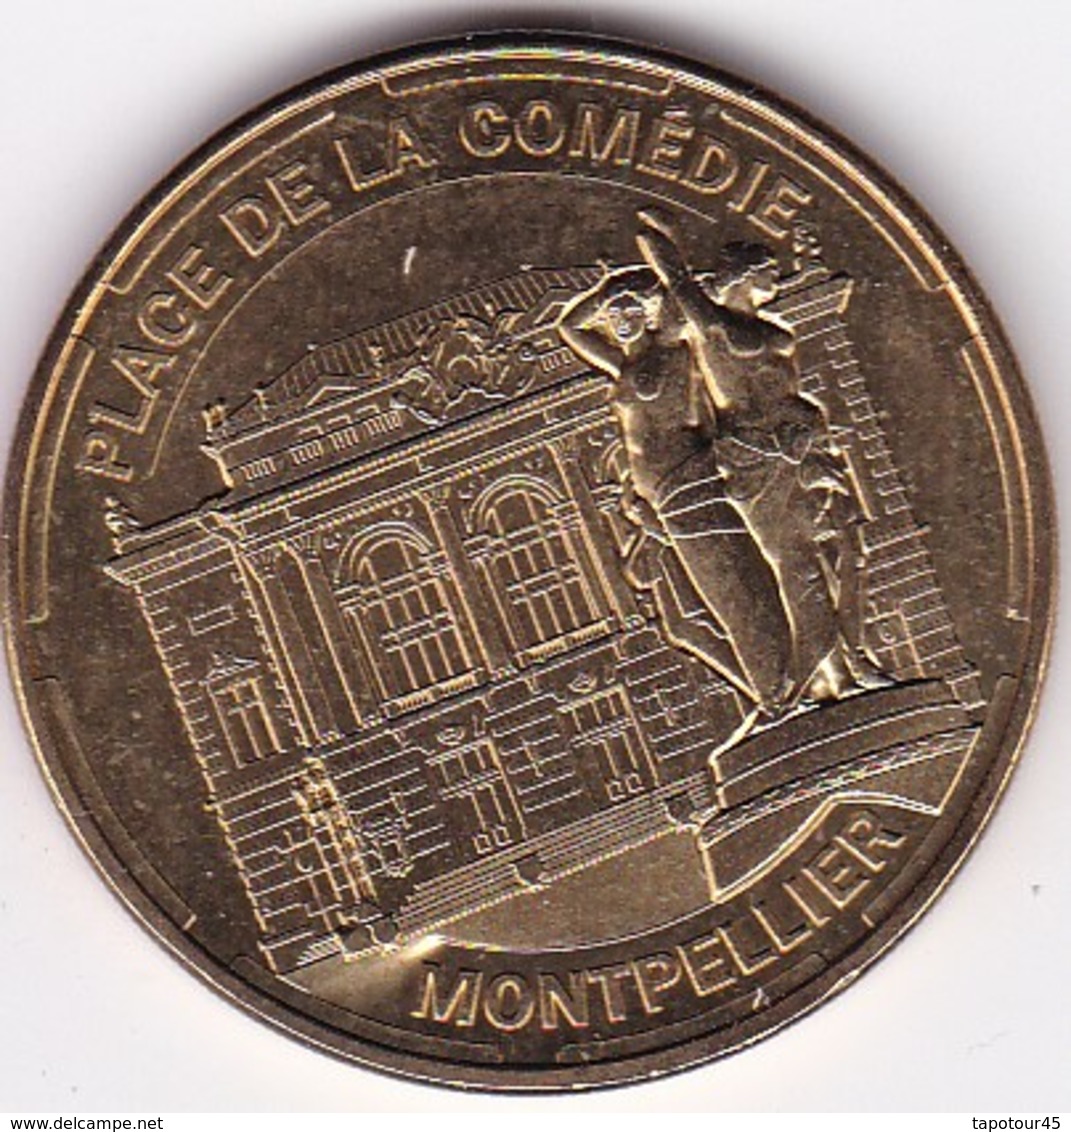 PL 2) 11 > Médaille Souvenir Ou Touristique > Montpellier  "Place De La Comédie" > Dia. 34 Mm - 2014